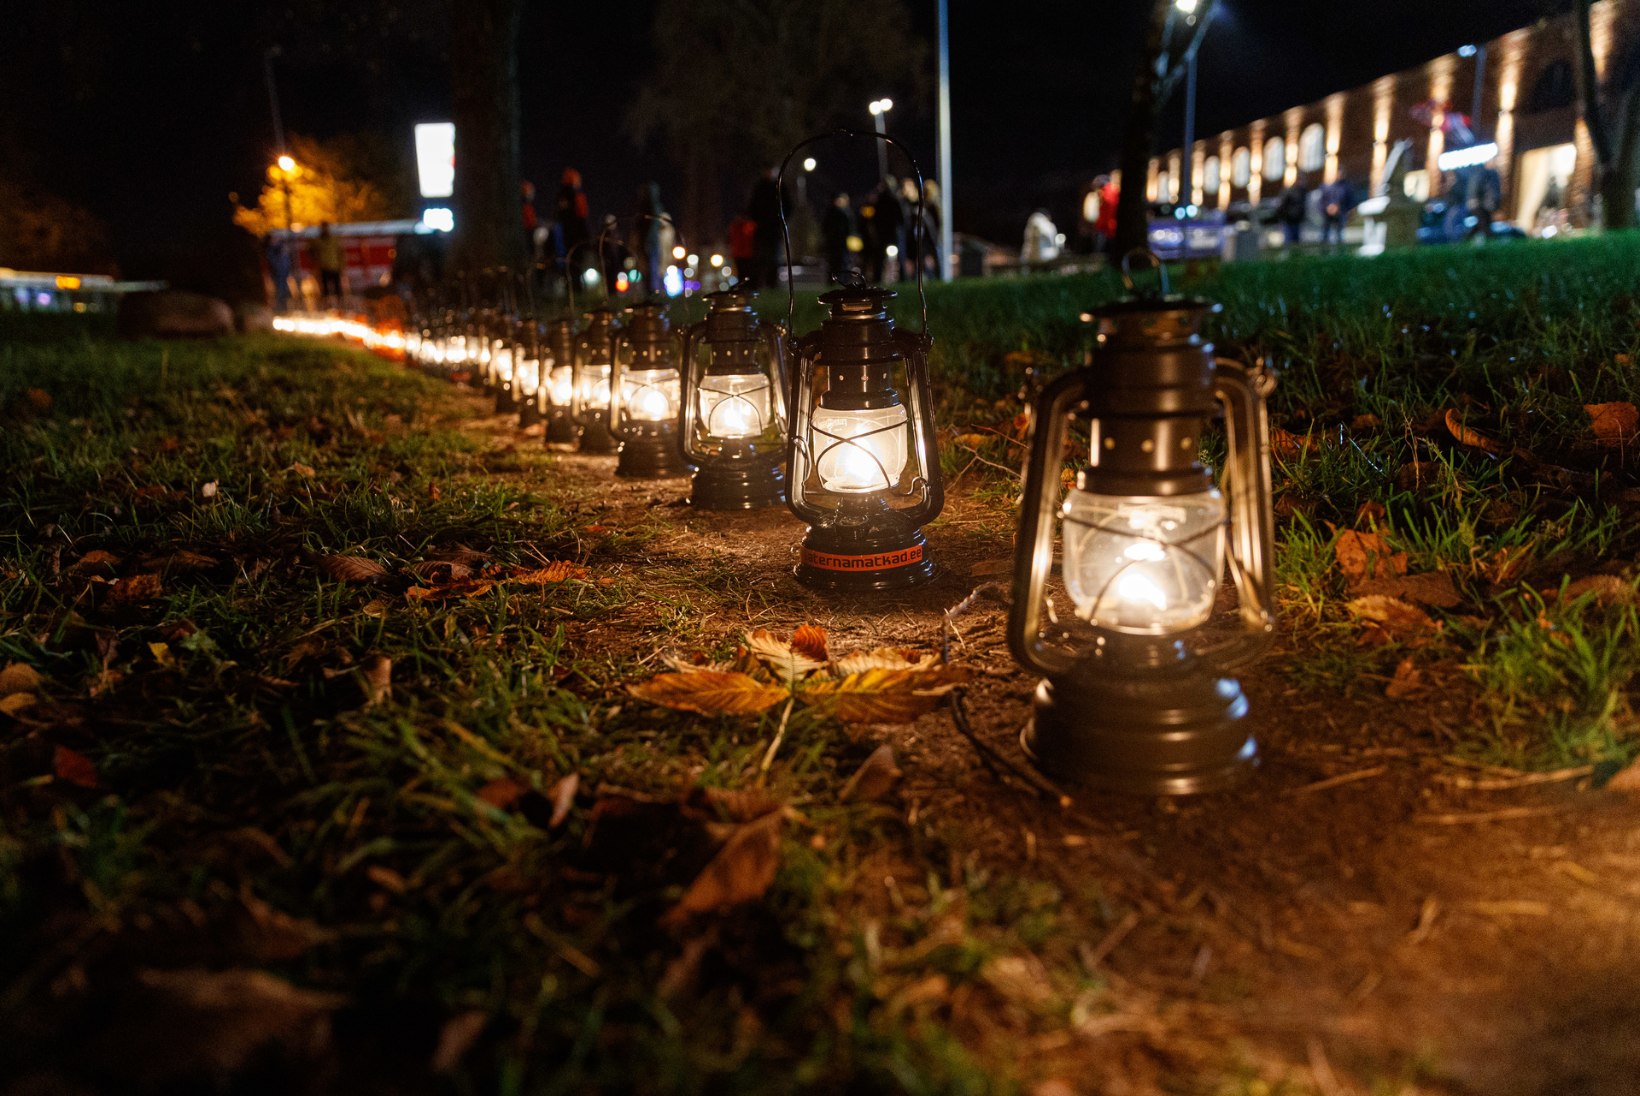 FOTOD | LATERNAMATK HINGEDEKUU ÖÖS: Sitsi tänav pole sugugi sitsiline ja litsid polegi päris litsid